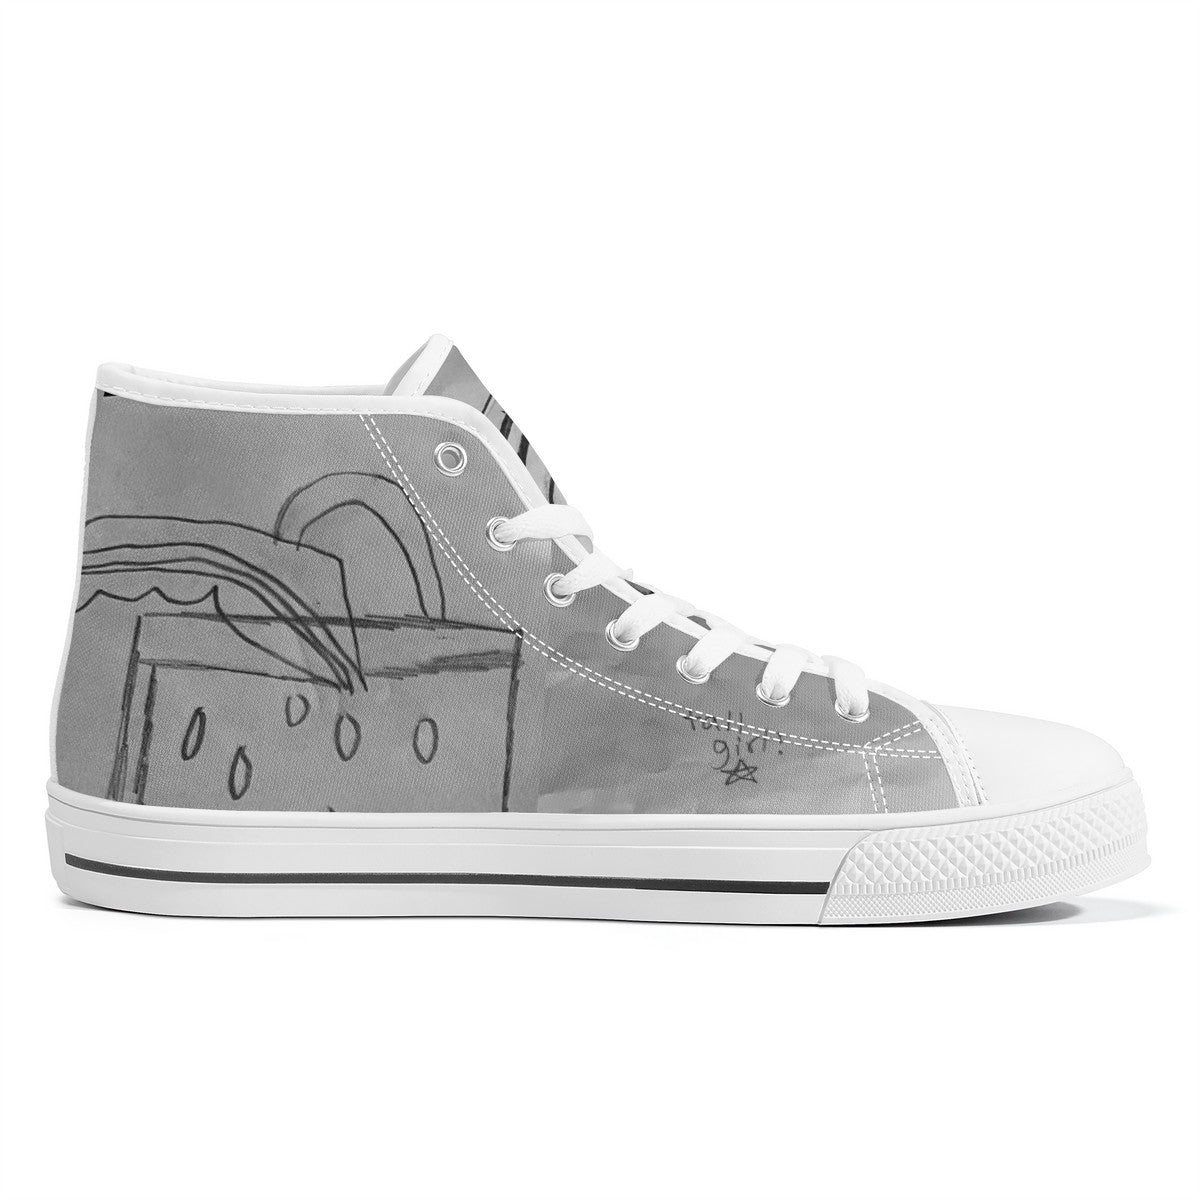 Custom Sketch Drawings | High Top Customized | Shoe Zero